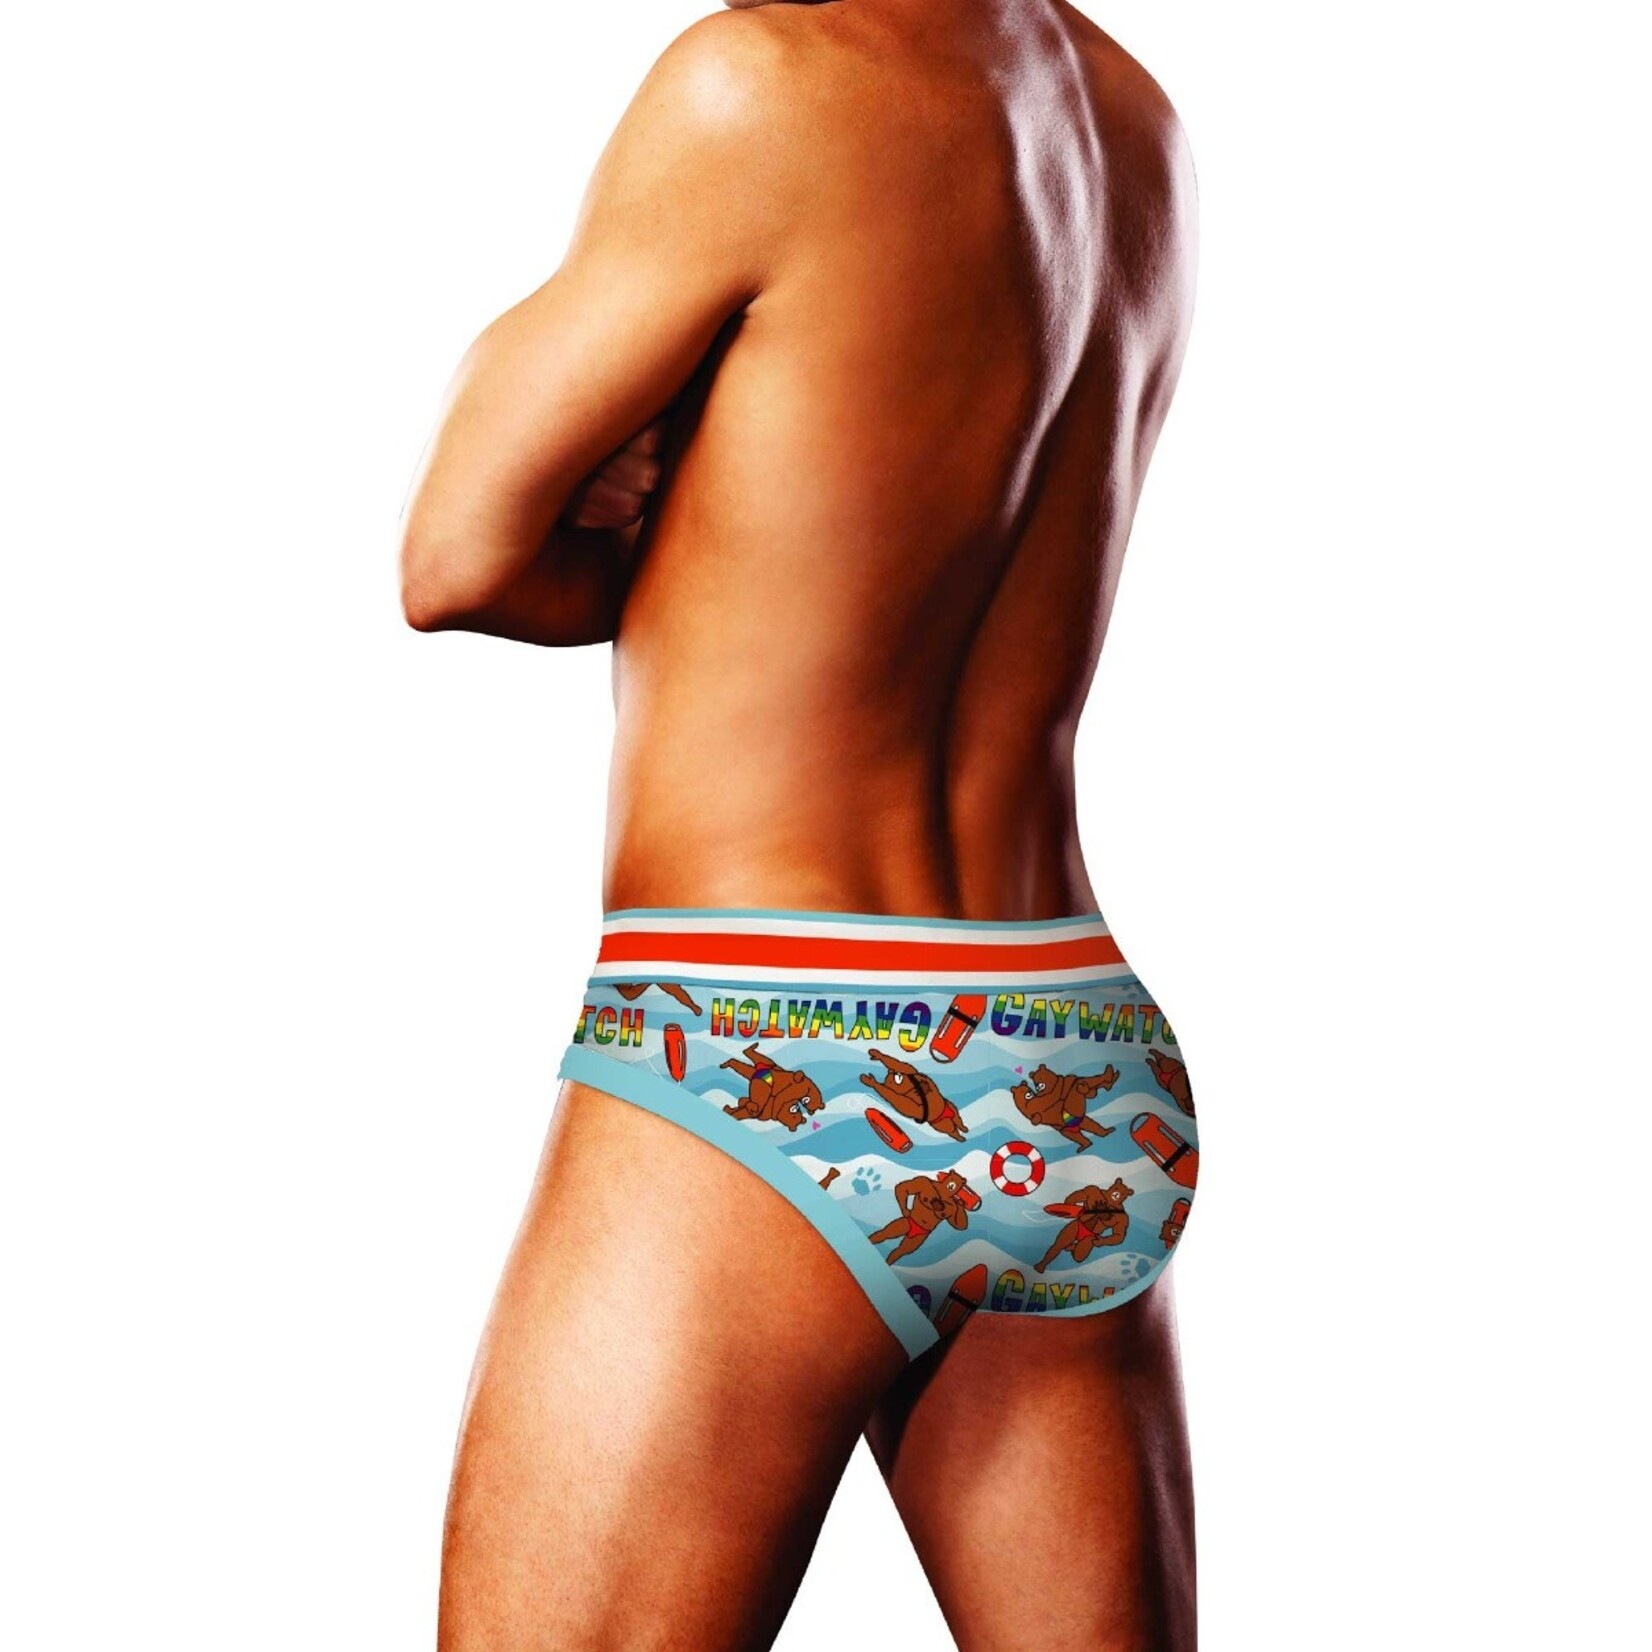 Prowler UK Gaywatch Summer Underwear